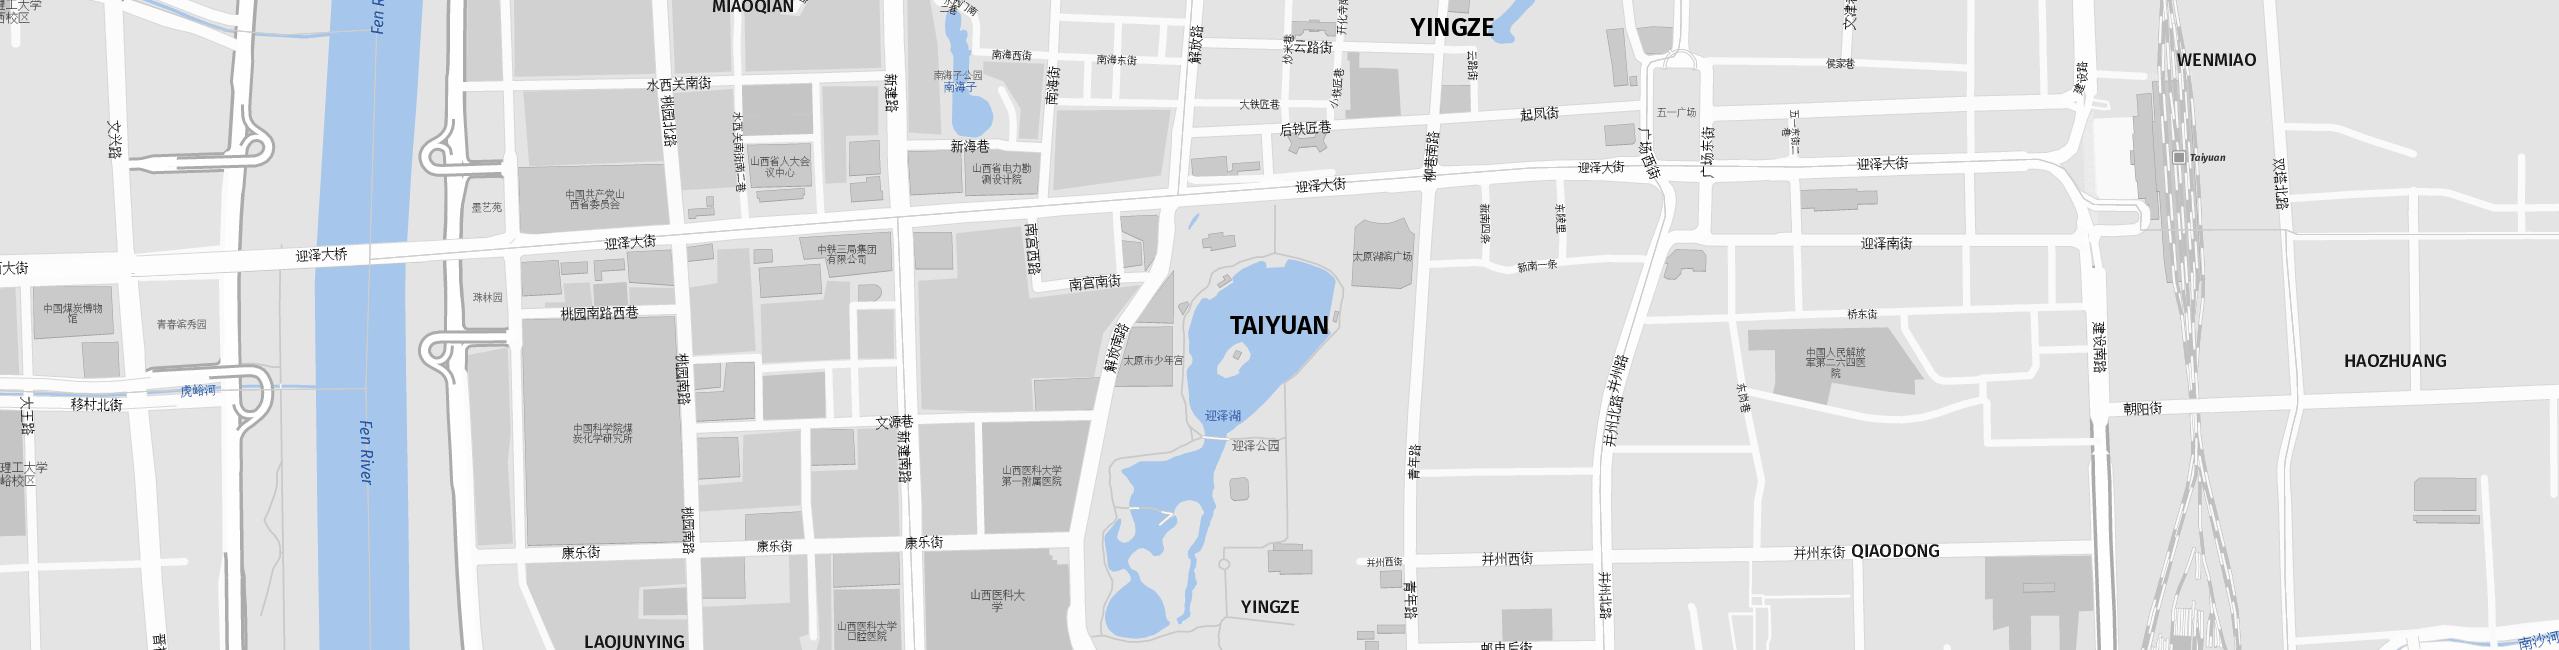 Stadtplan Taiyuan zum Downloaden.